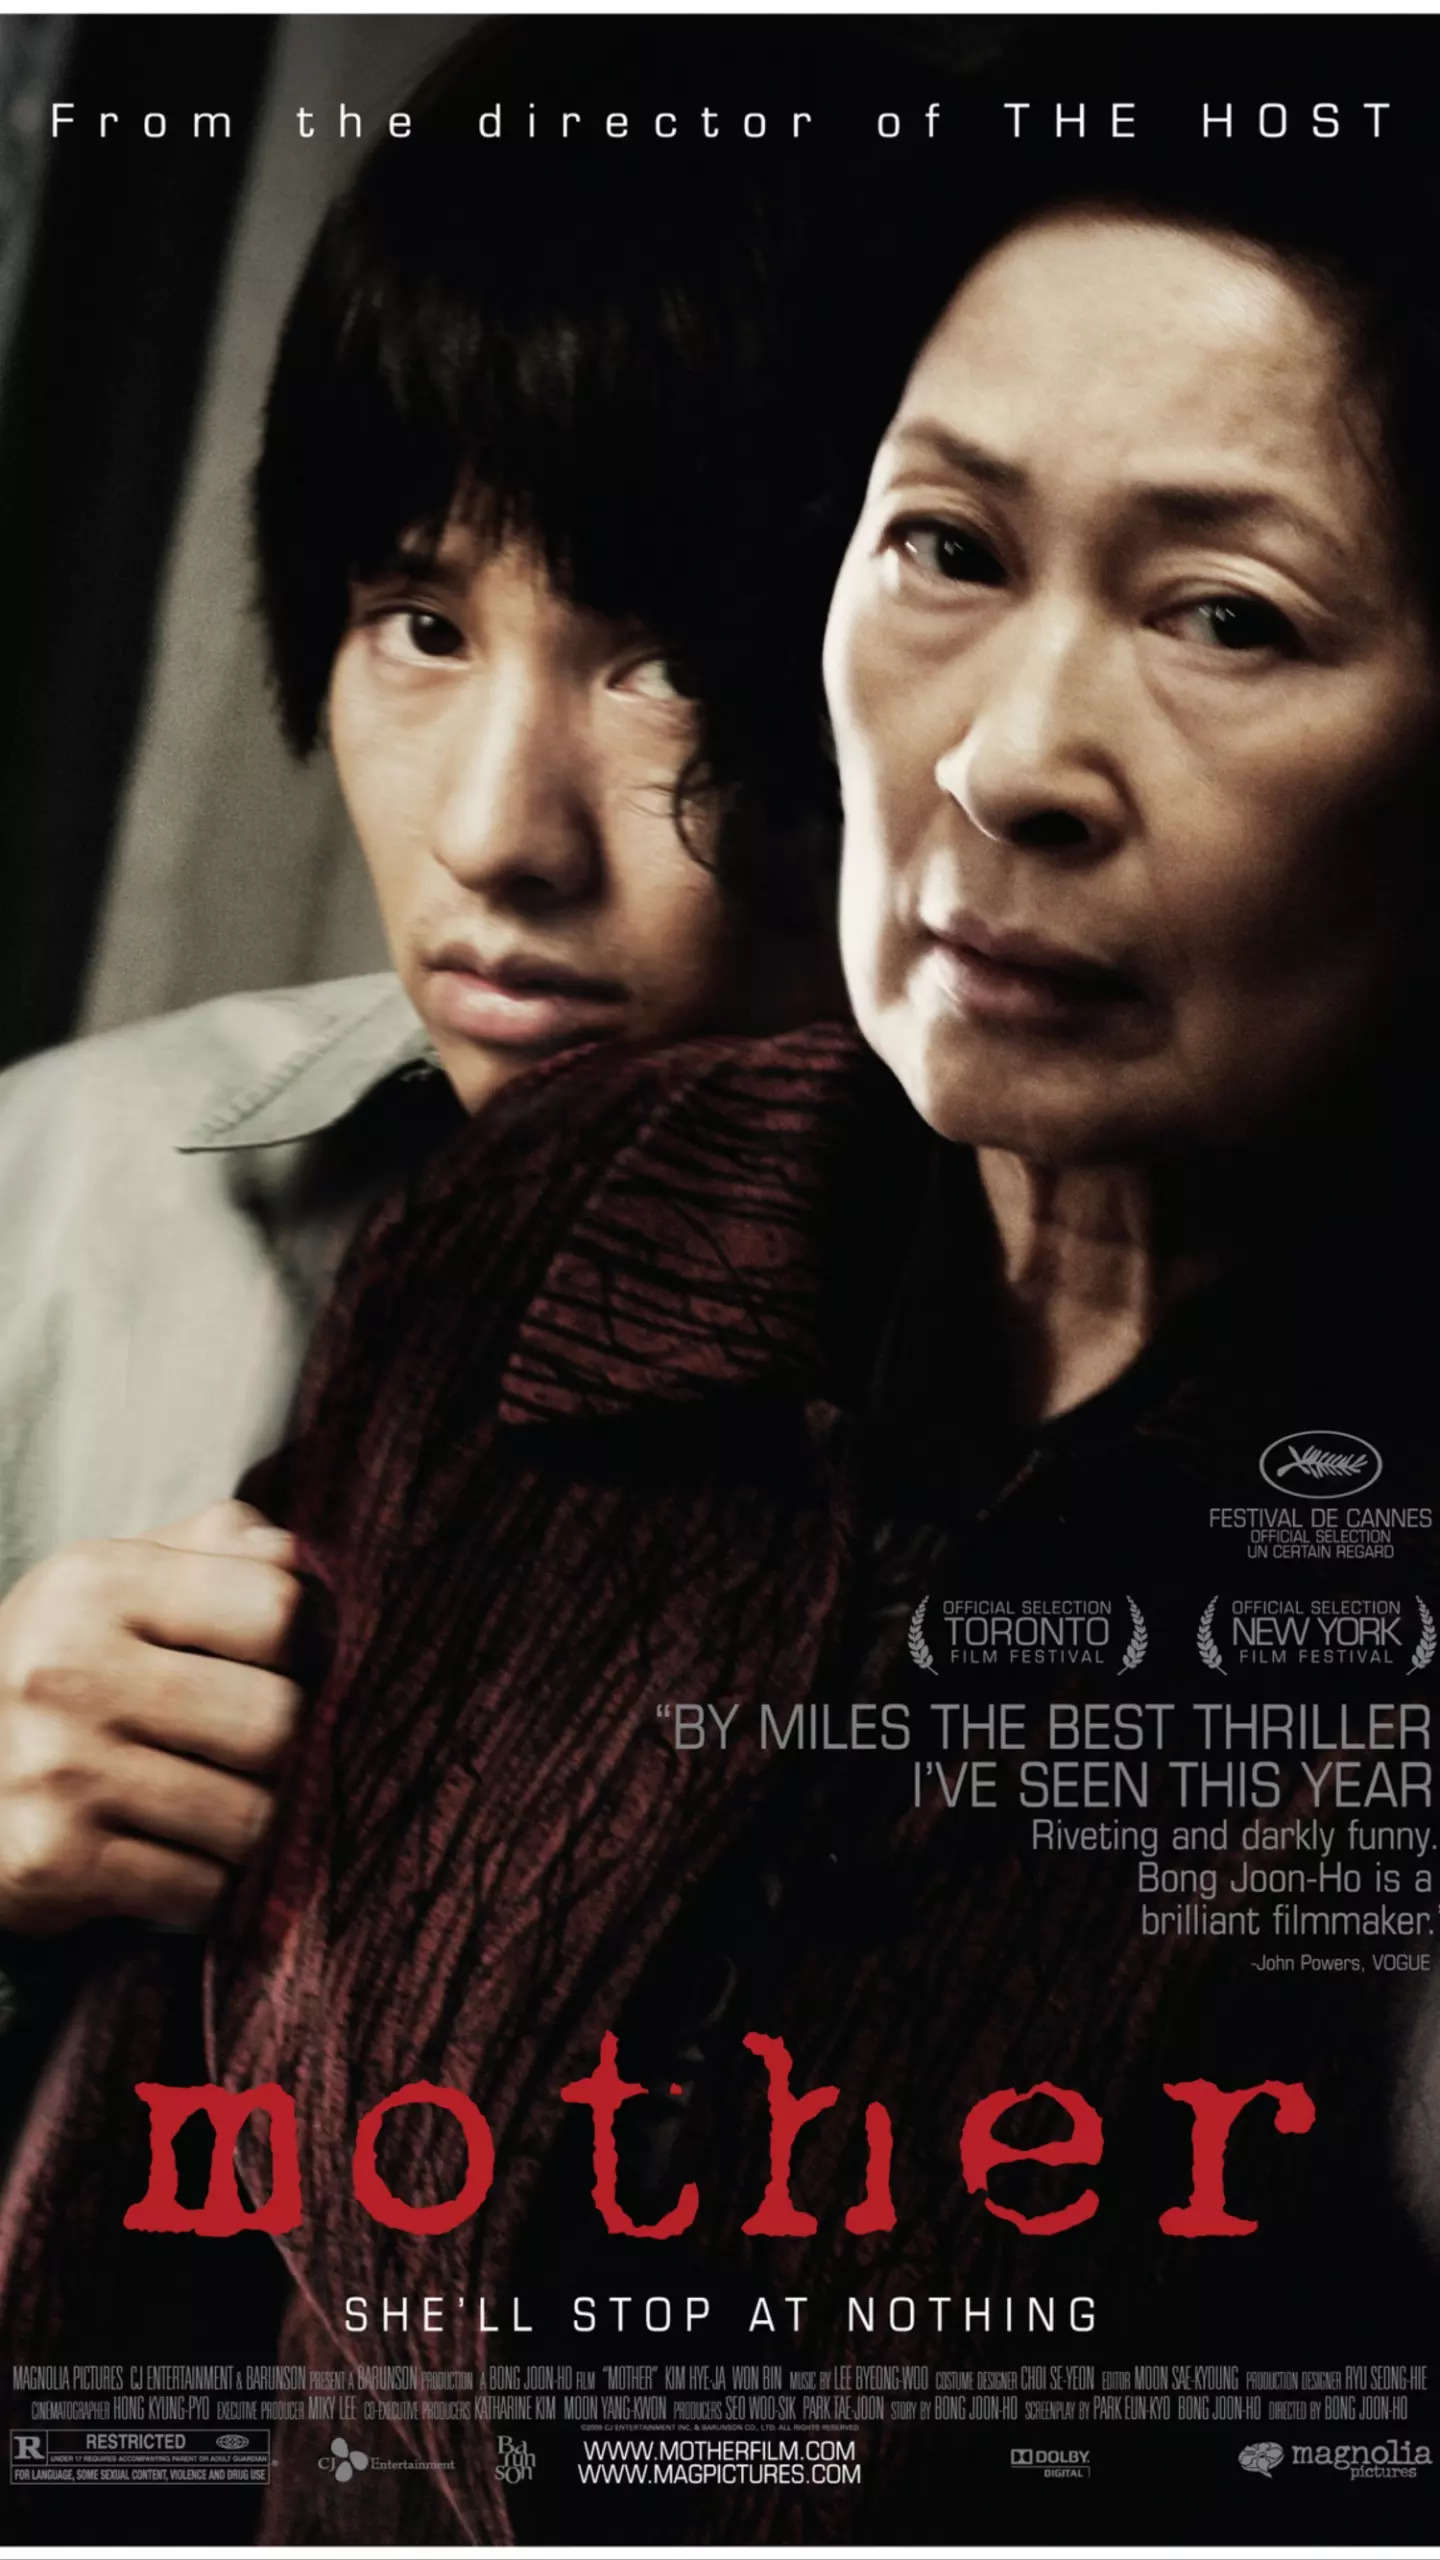 After.Life (2009) - IMDb